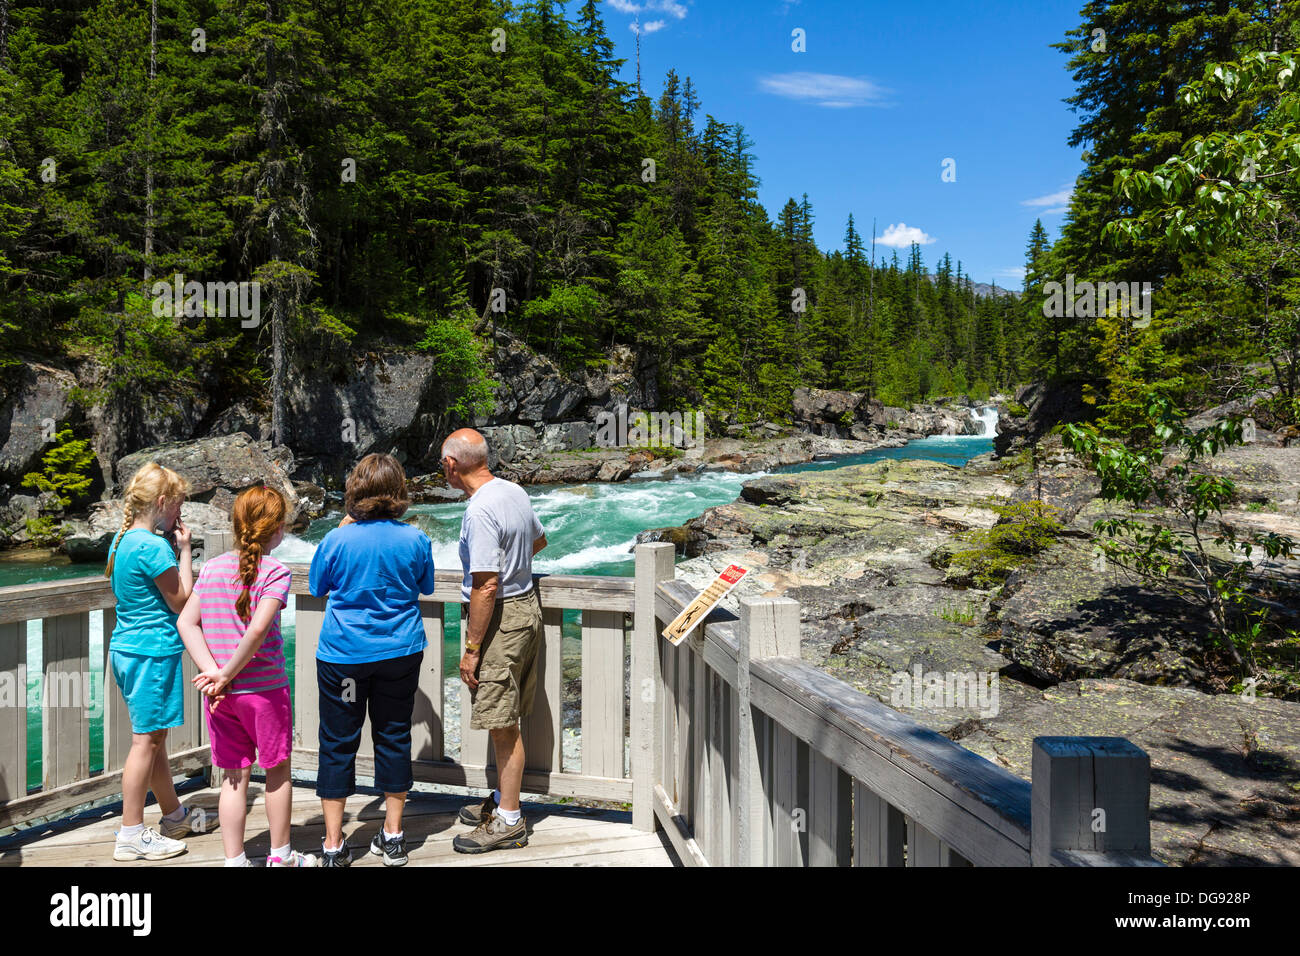 Tourists at McDonald Falls overlook, Glacier National Park, Montana, USA Stock Photo